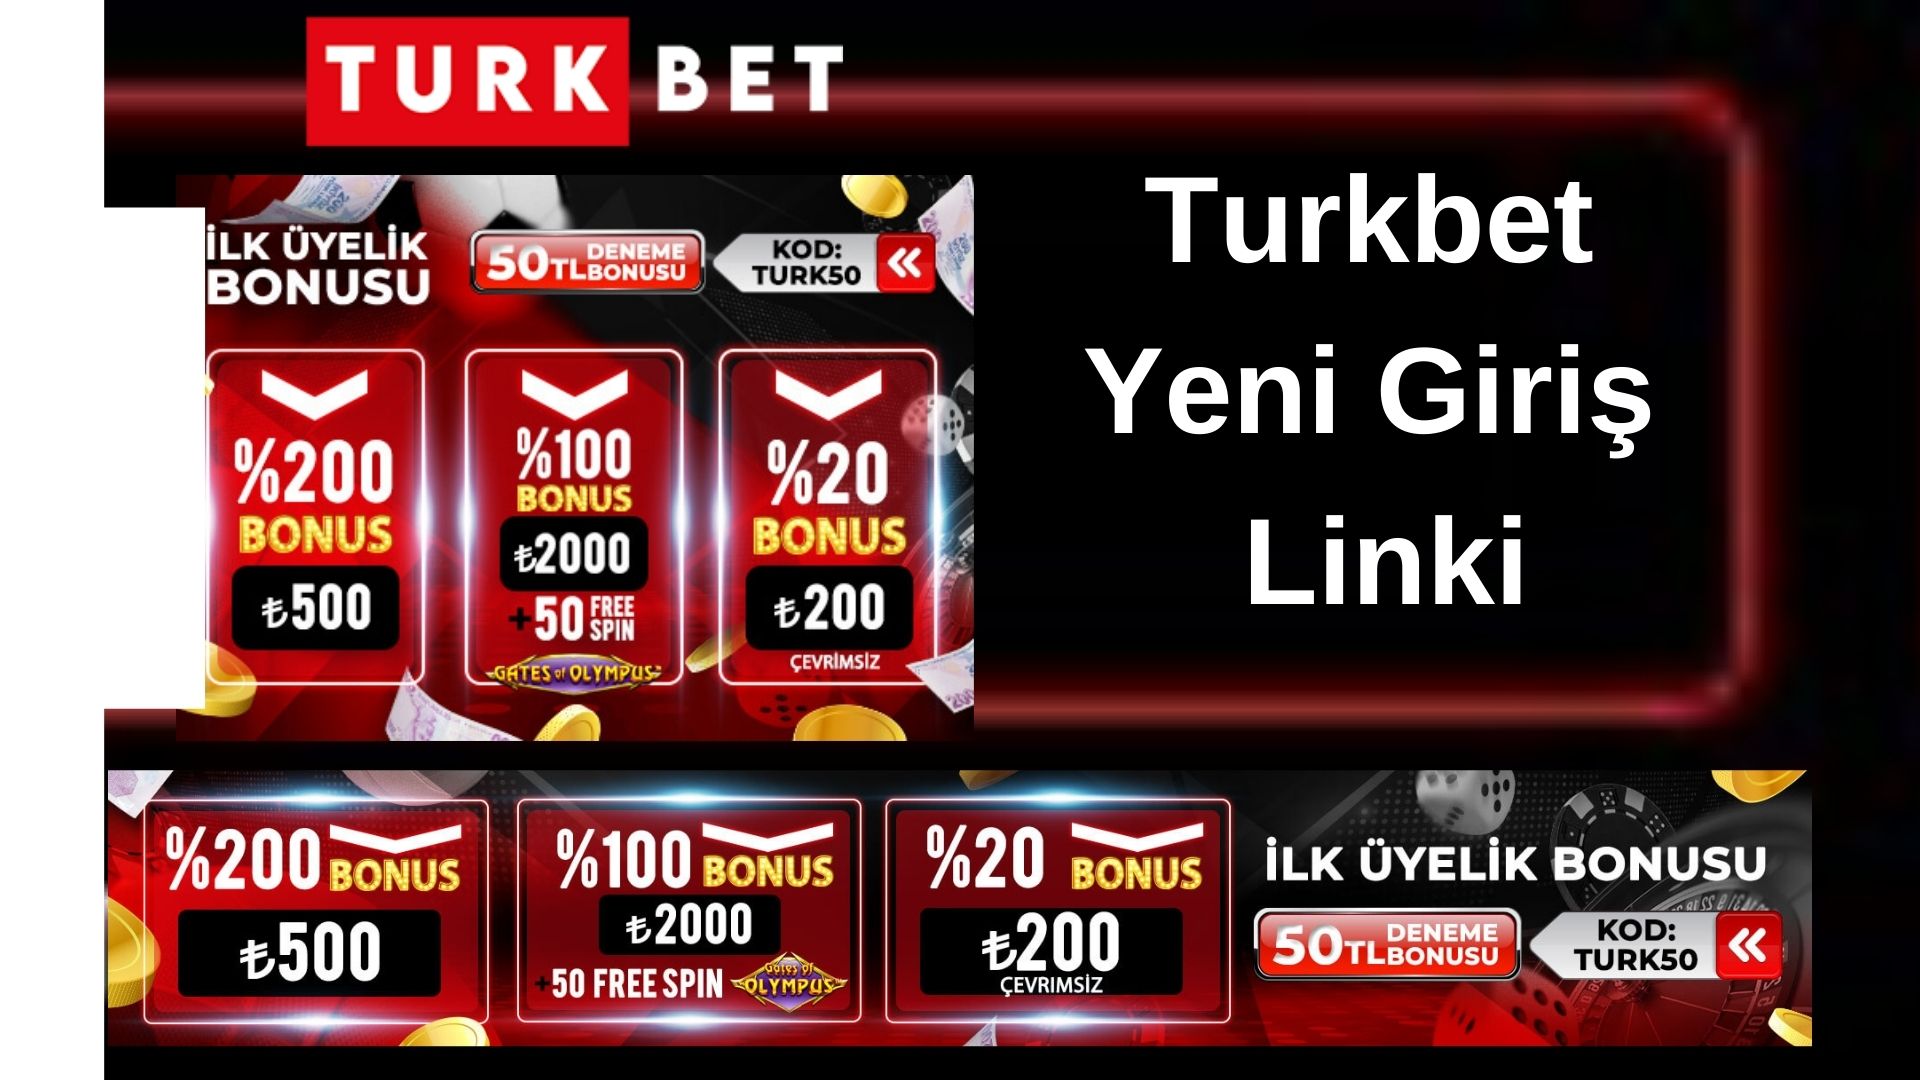 Turkbet Yeni Giriş Linki